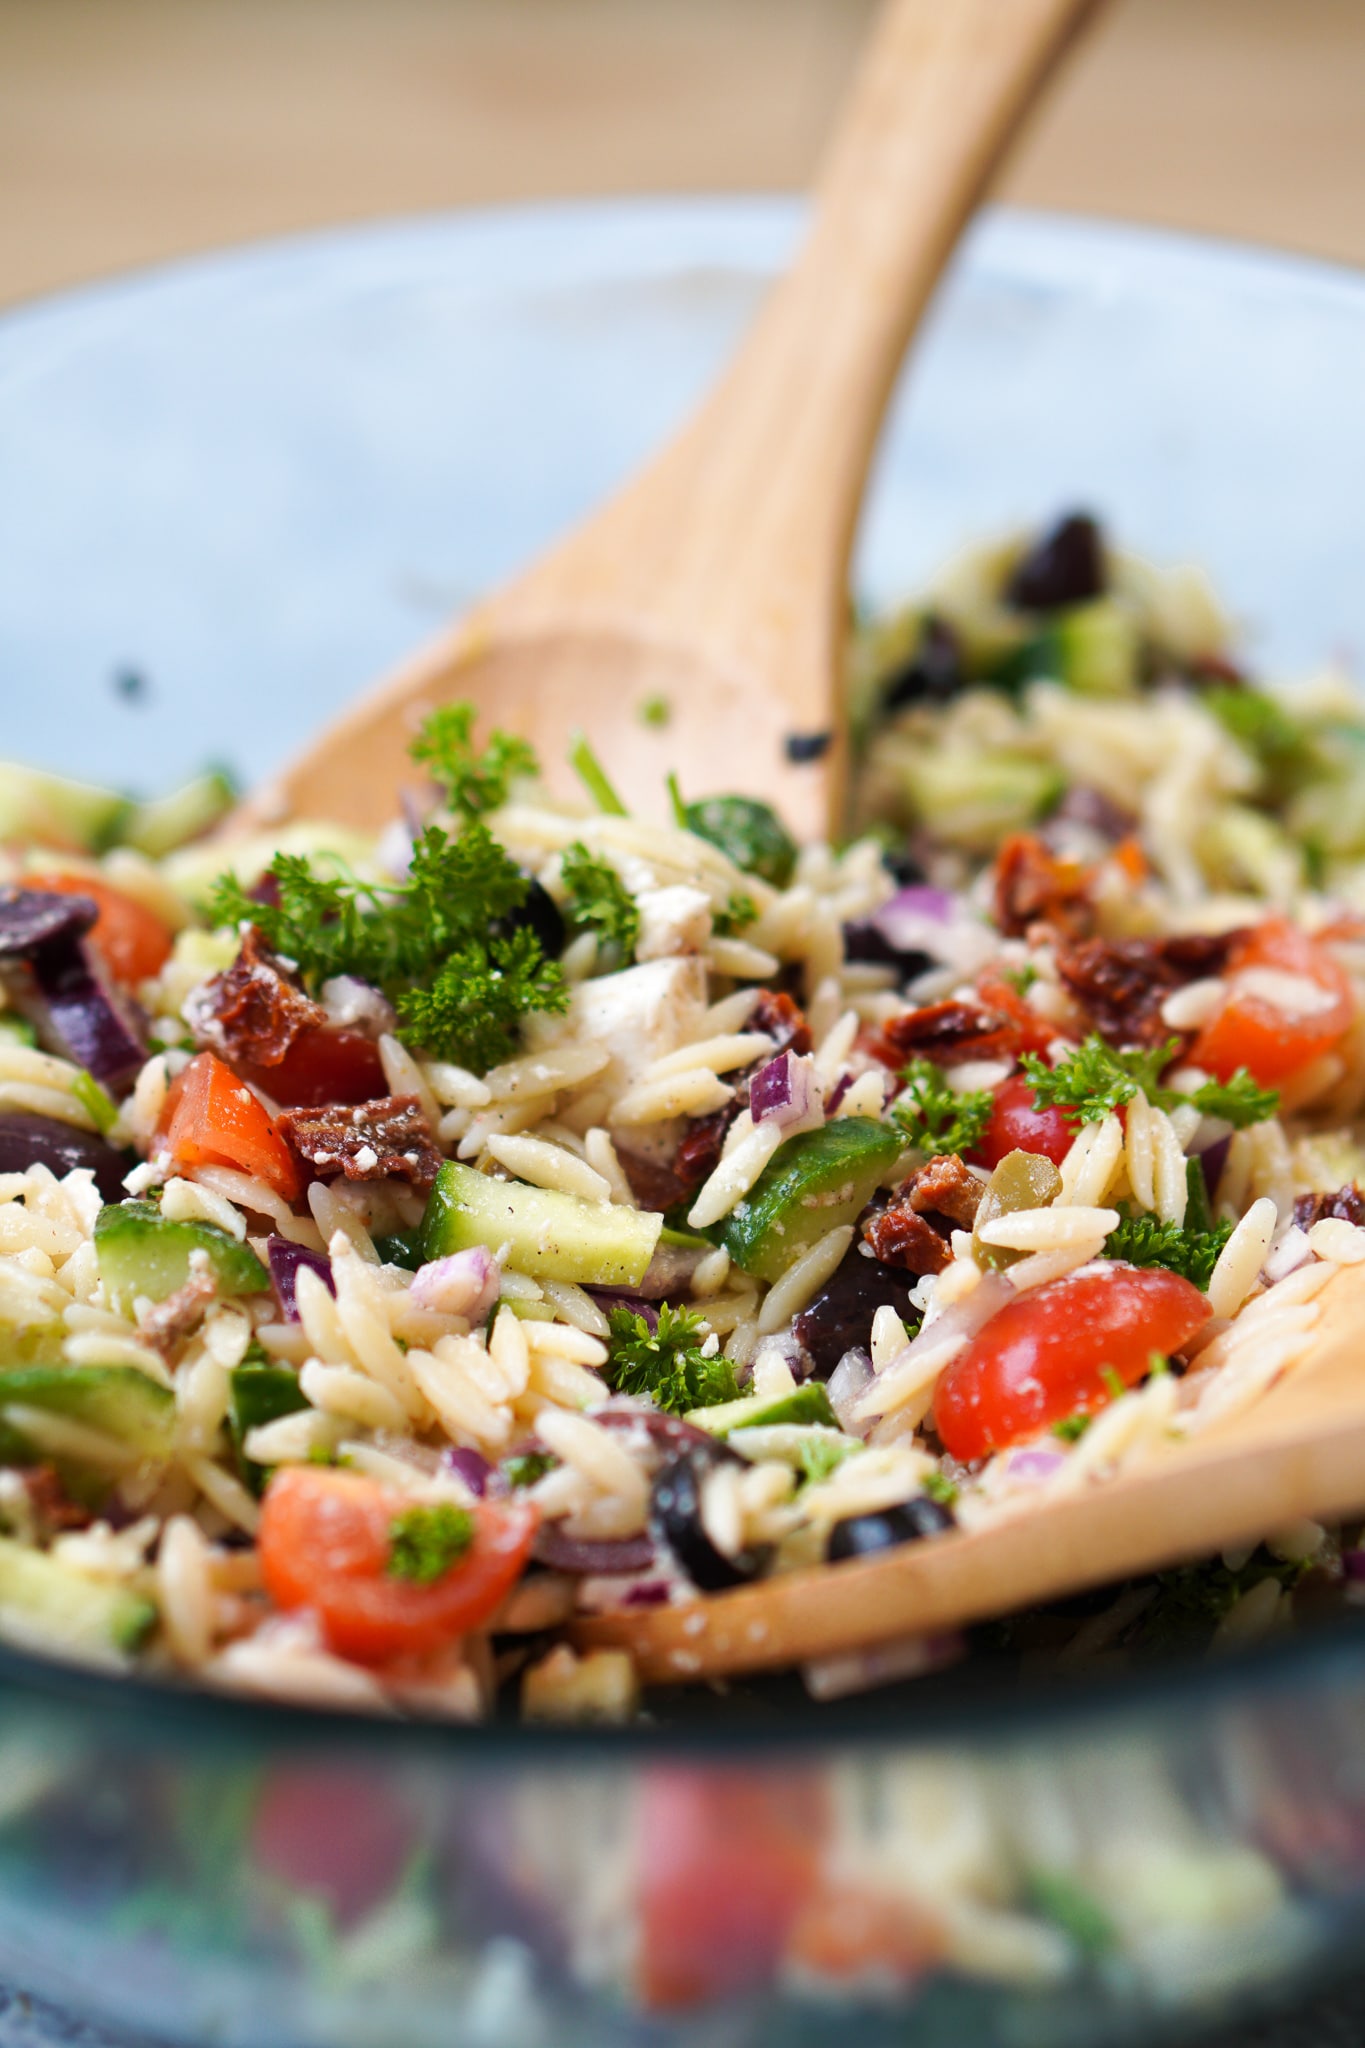 Griechischer Orzo Salat | Perfekt als Grillbeilage